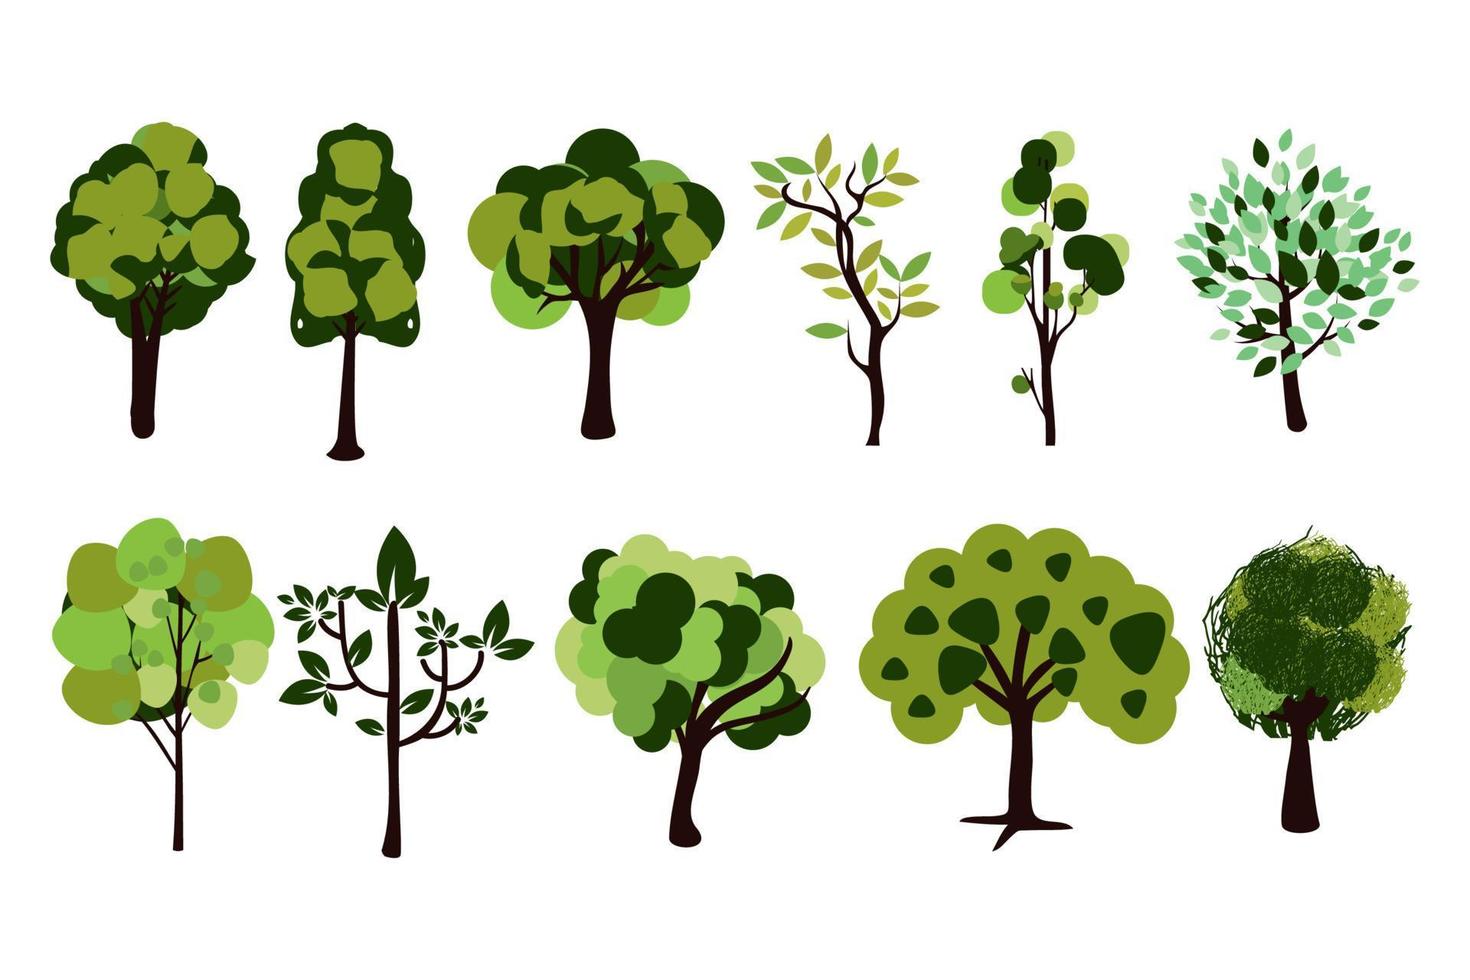 colección de ilustraciones de árboles. se puede utilizar para ilustrar cualquier tema de naturaleza o estilo de vida saludable. vector